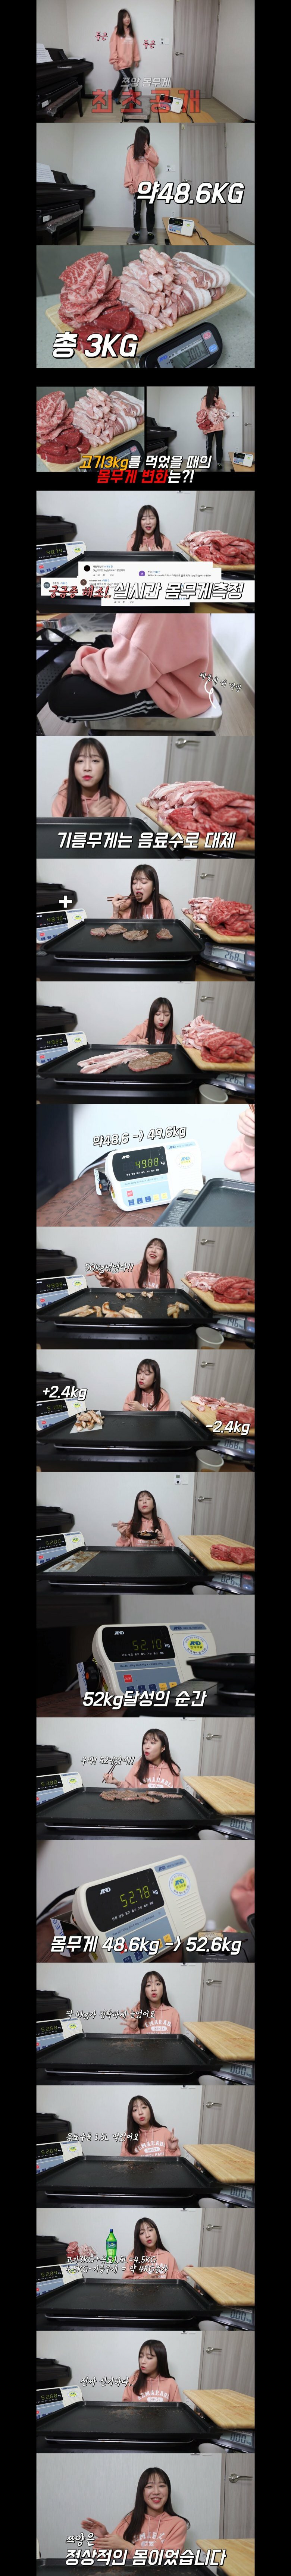 쯔앙 음식 먹으면서 몸무게 변화 측정.jpg